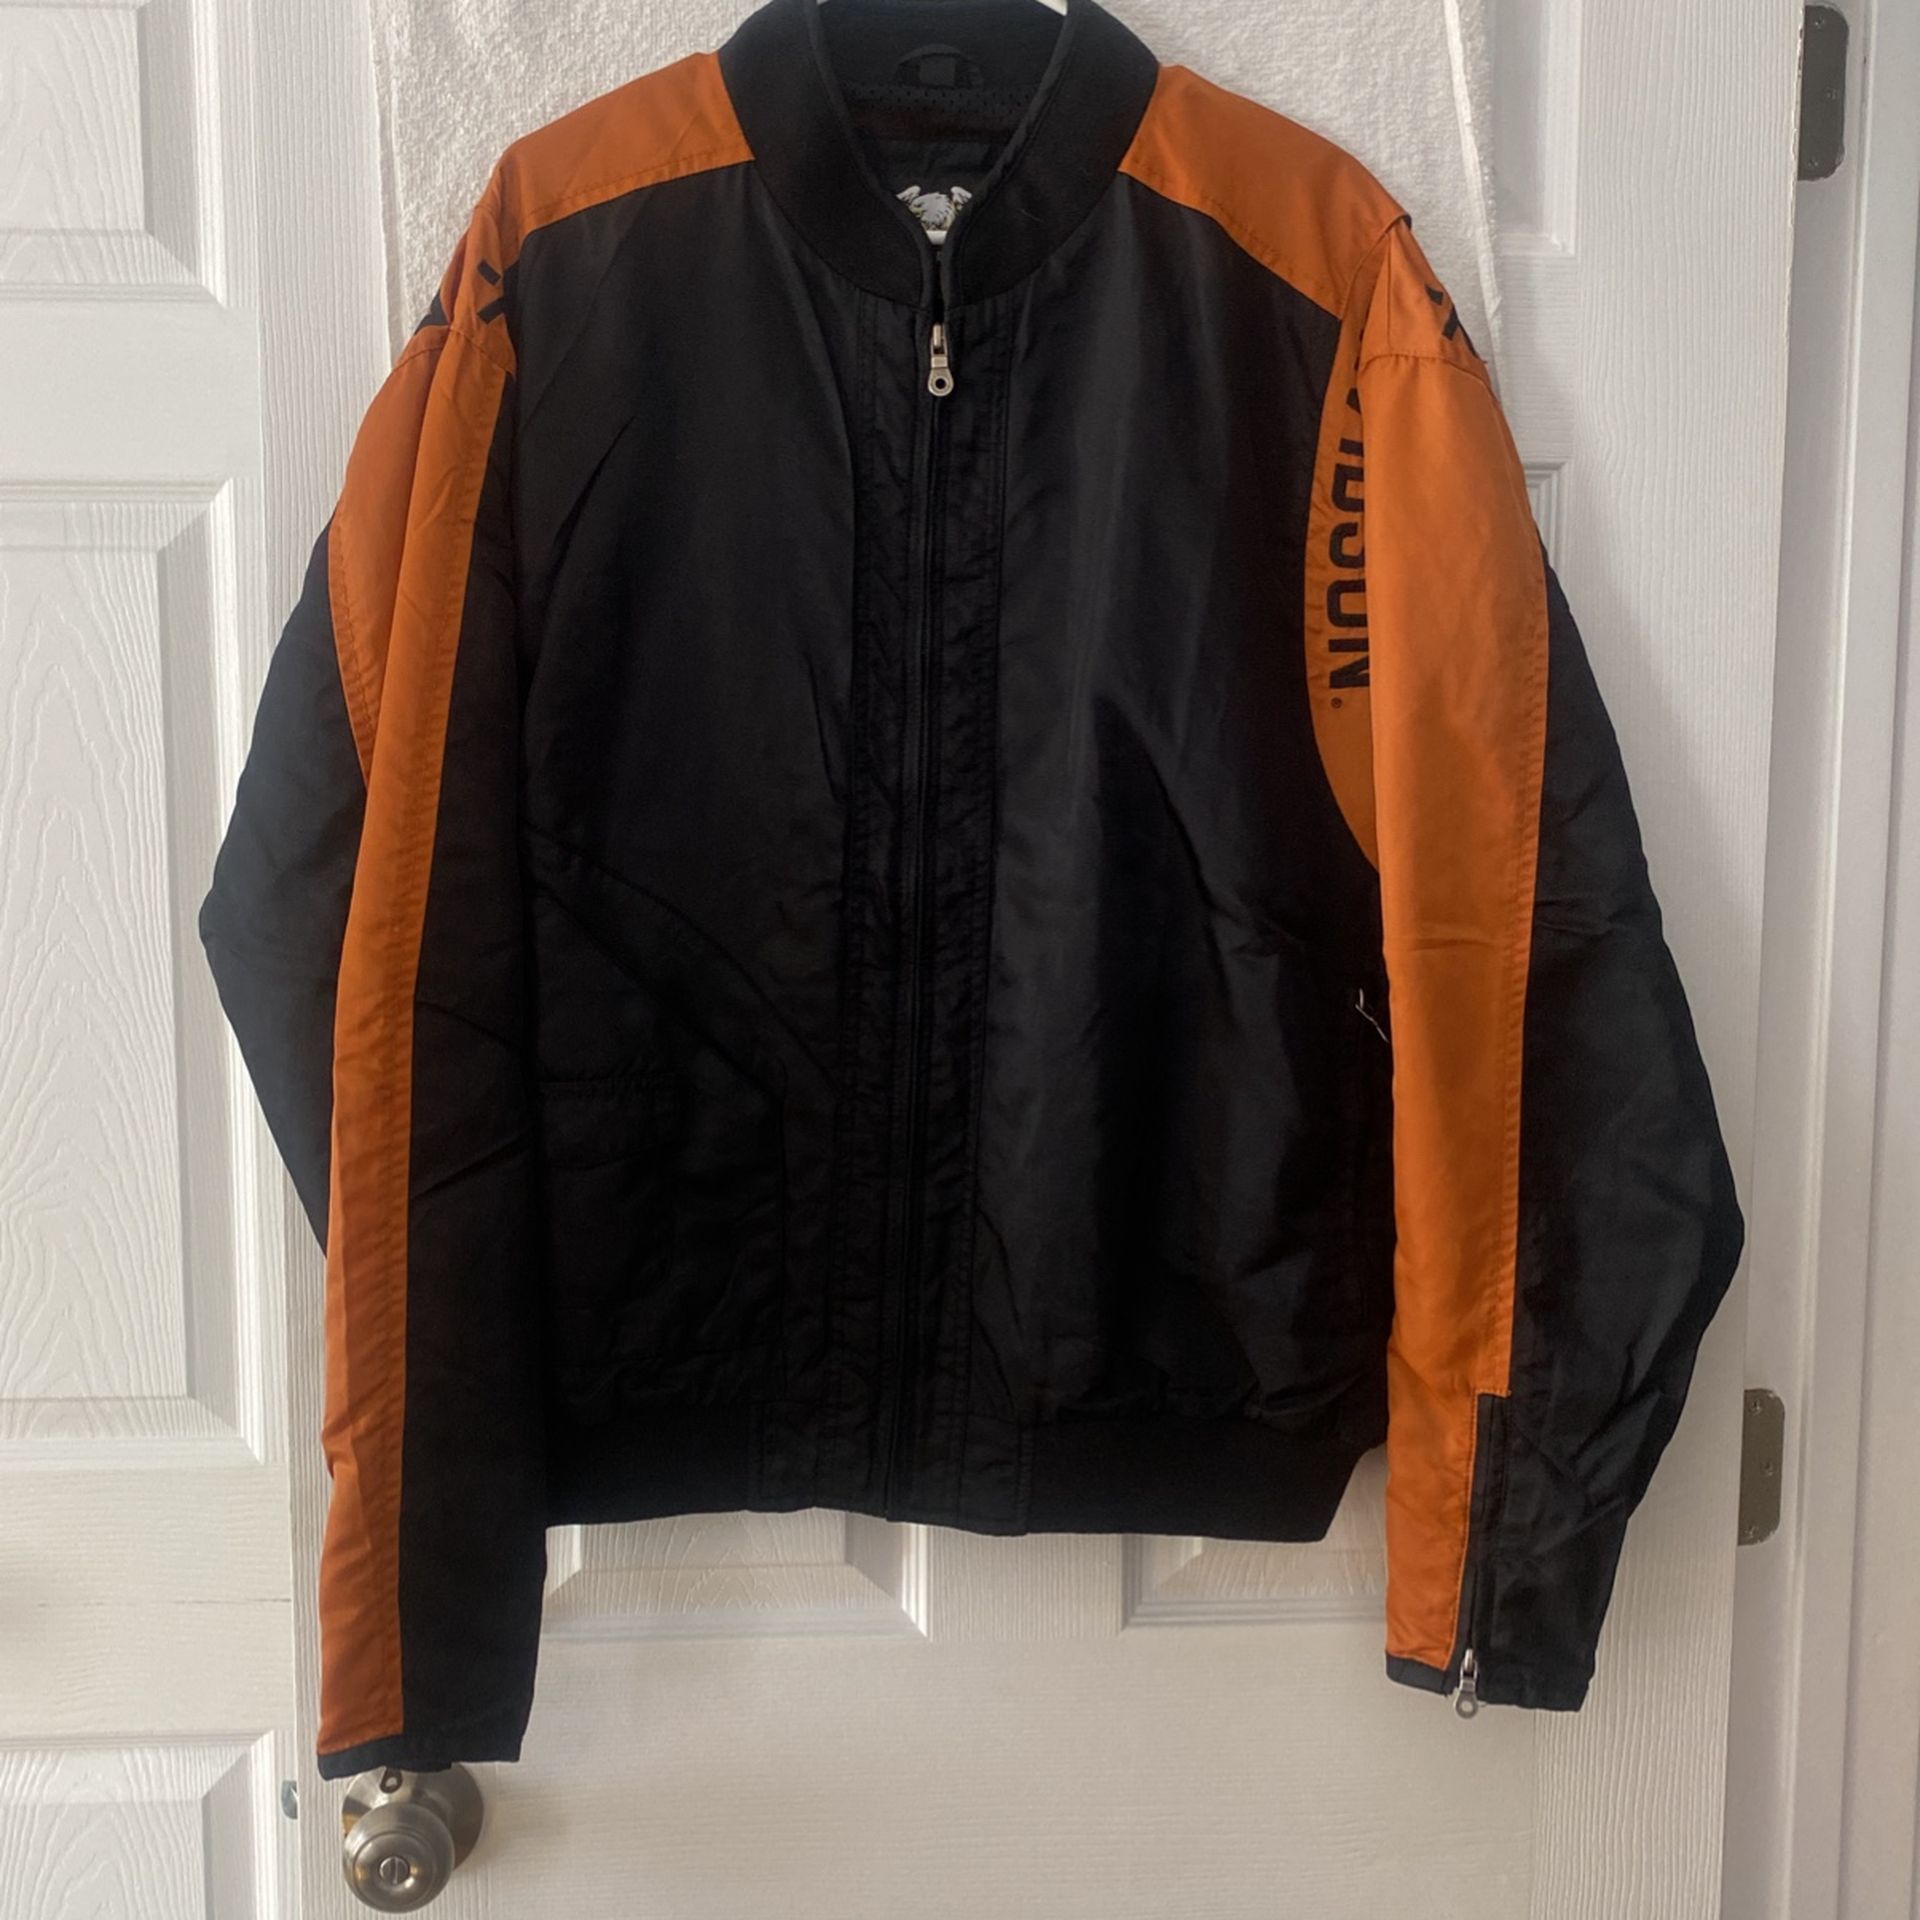 Men’s Harley Davidson Bomber Jacket